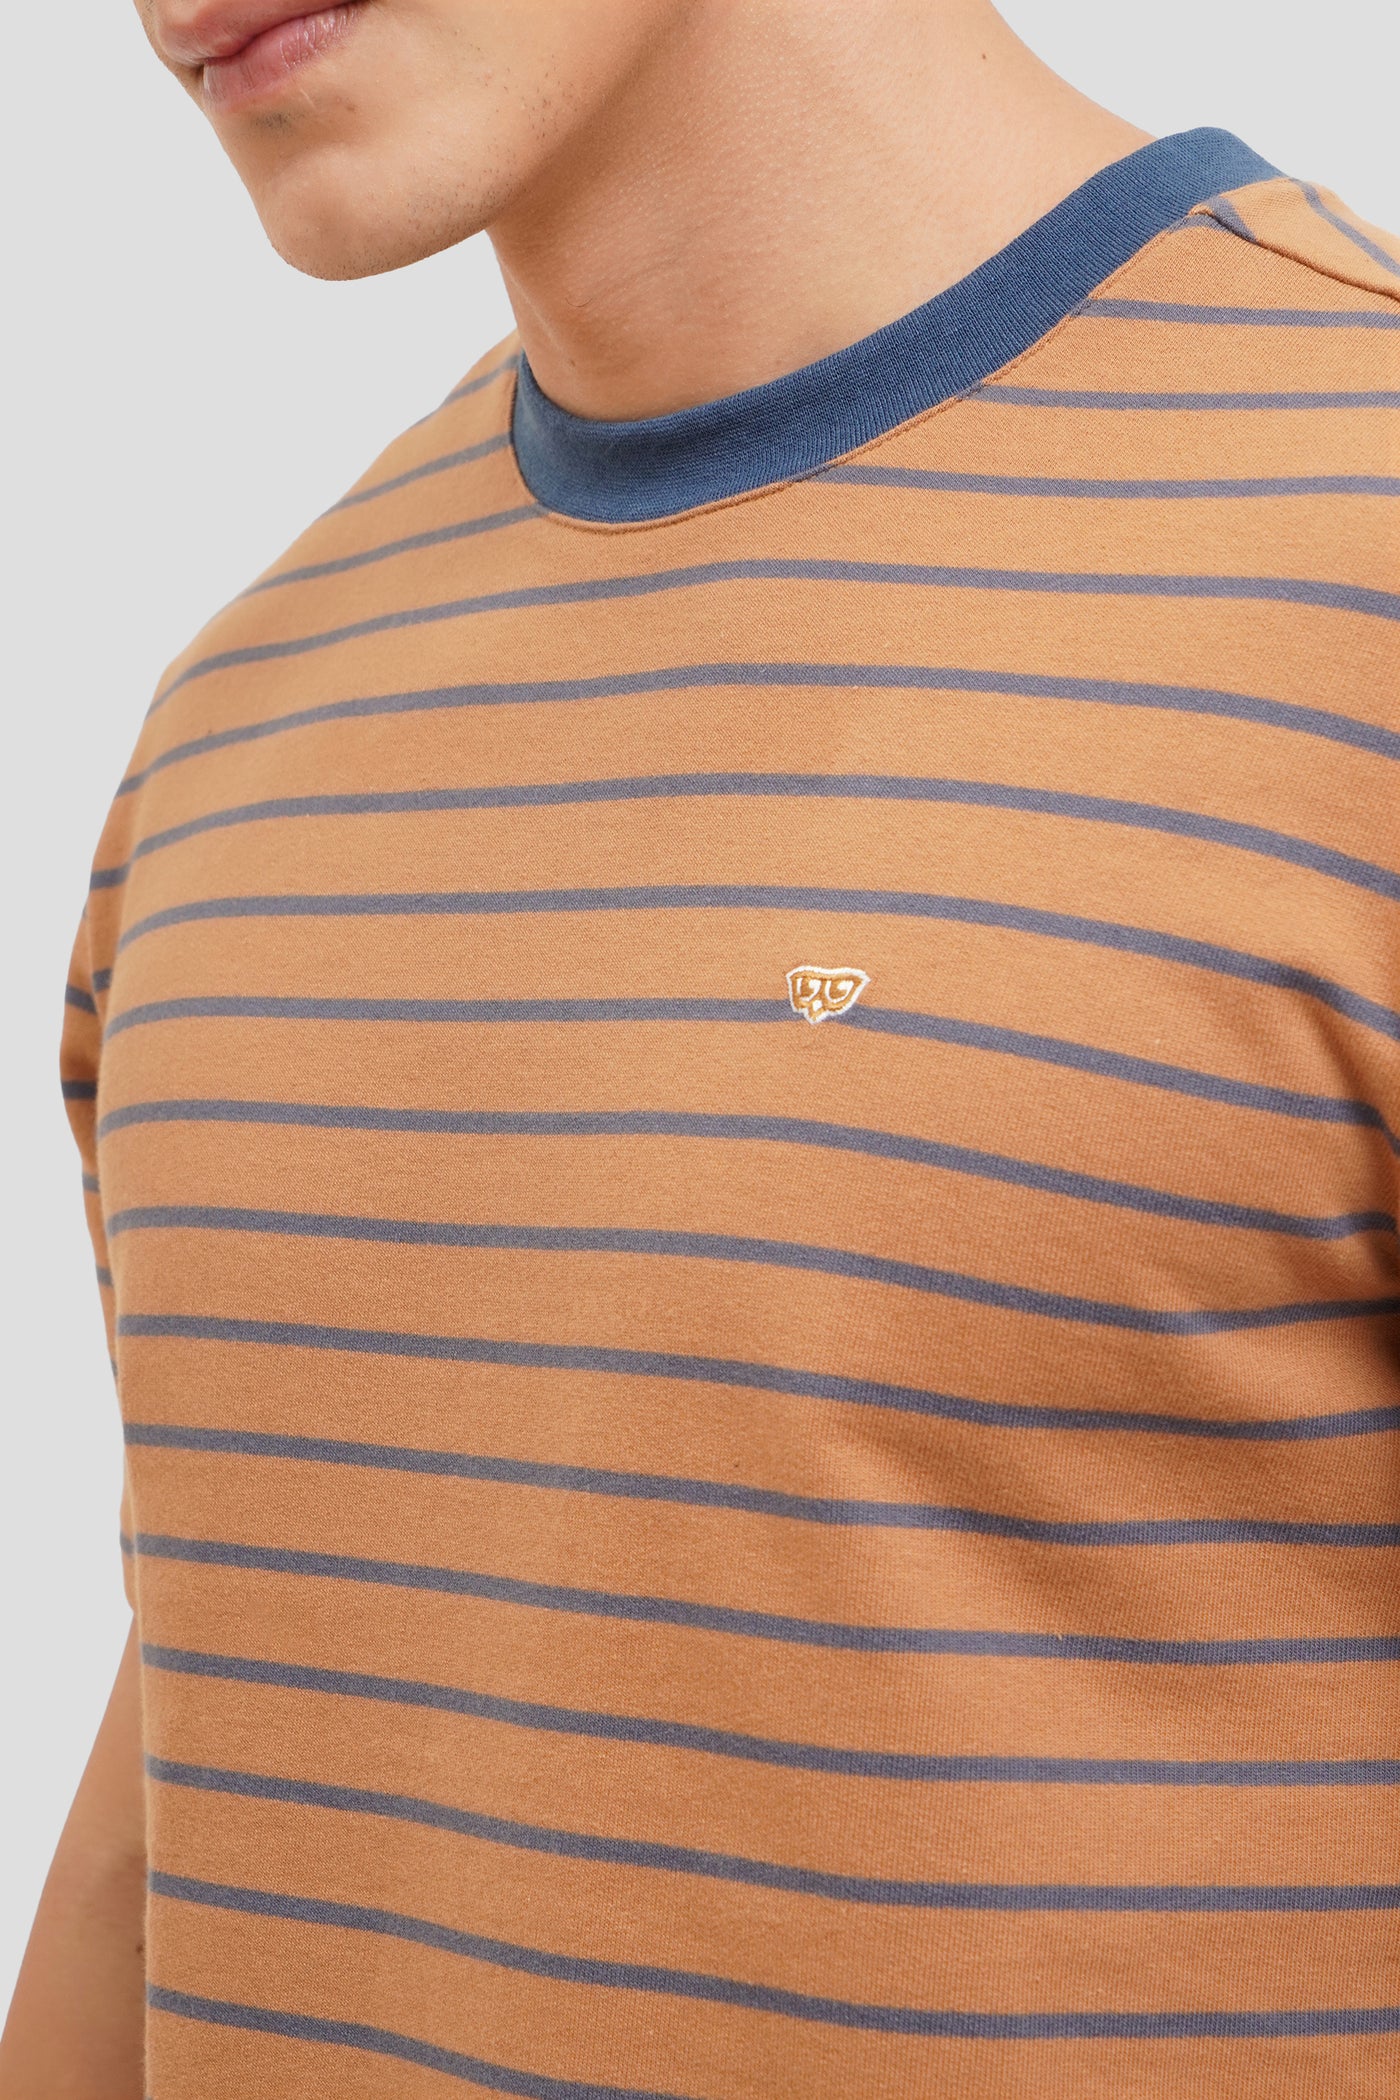 Striped Ringer Short Sleeve T-Shirt